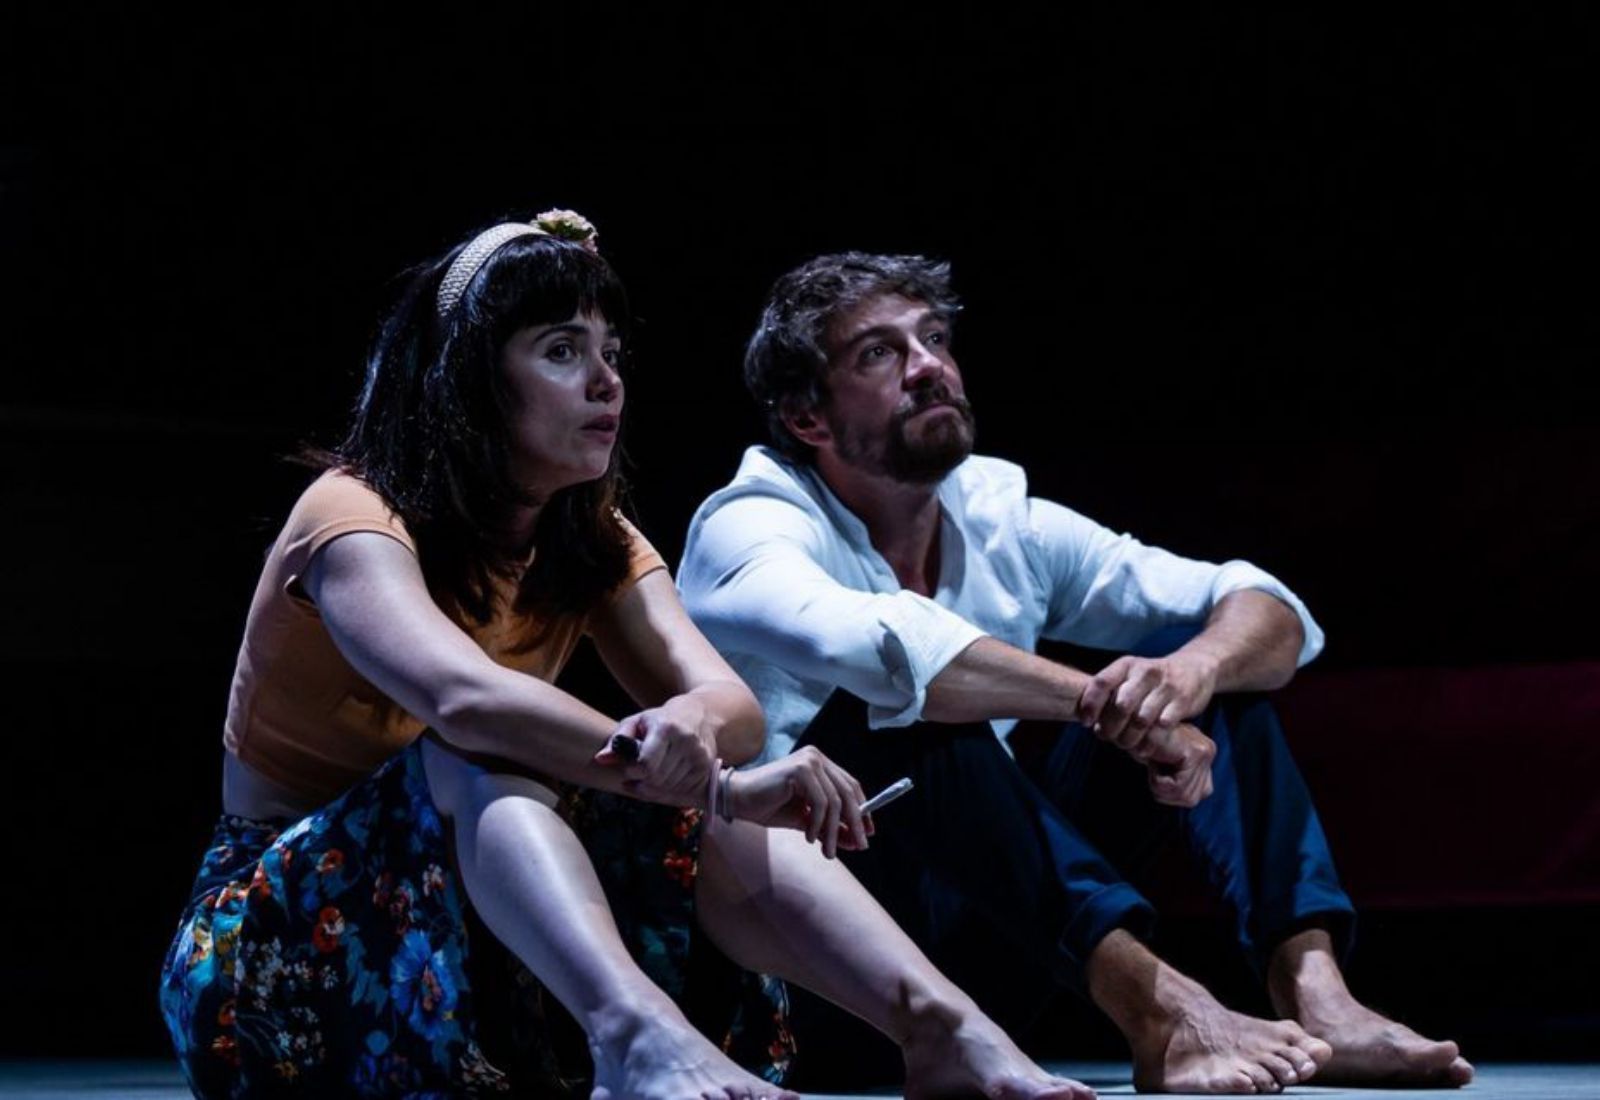  López y Gómez en una escena de la obra teatral.